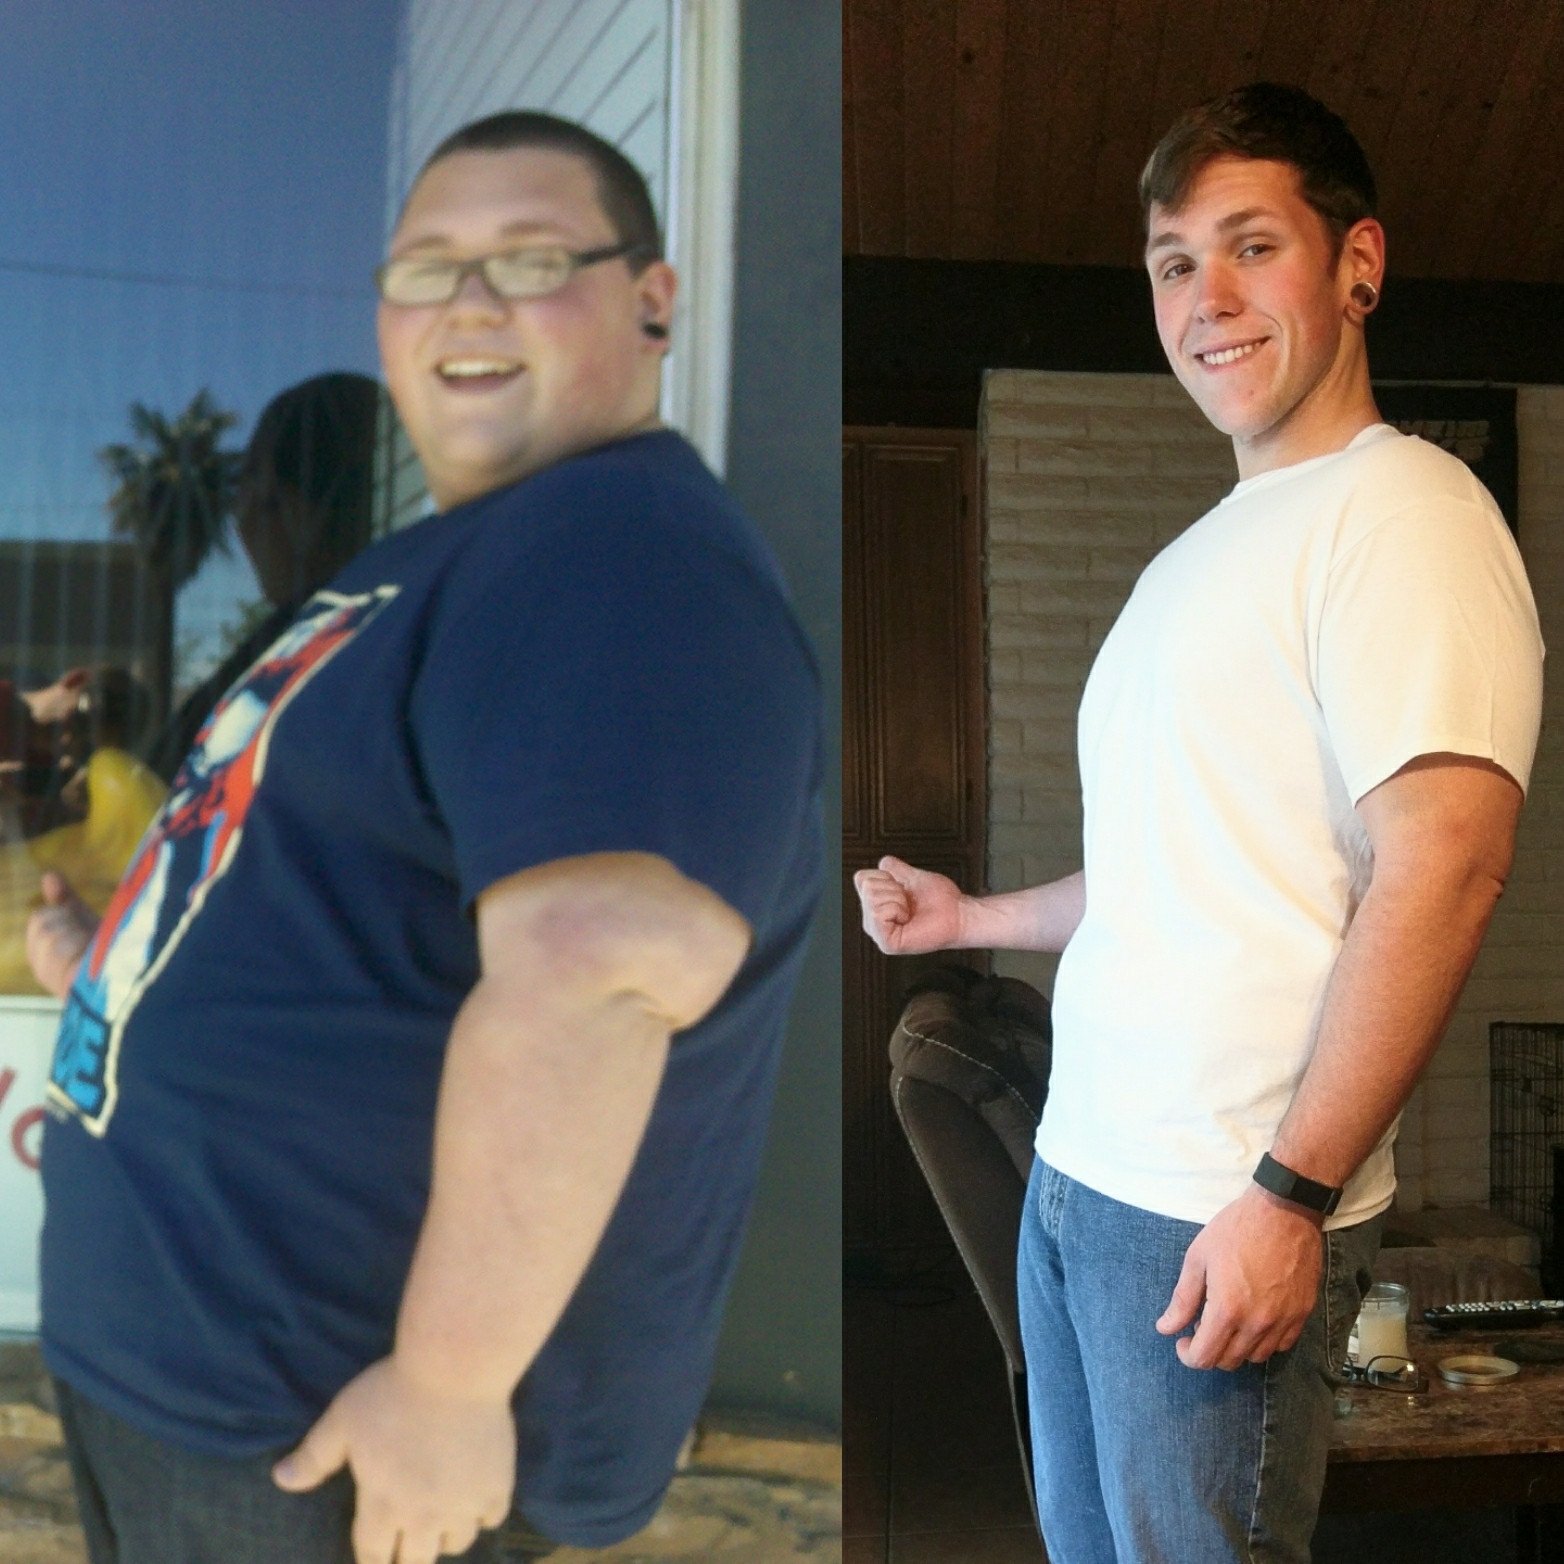 Была толстой потом похудела. До и после похудения мужчины. Похудение до и после. Люди до и после похудения. Похудел до и после мужчины.